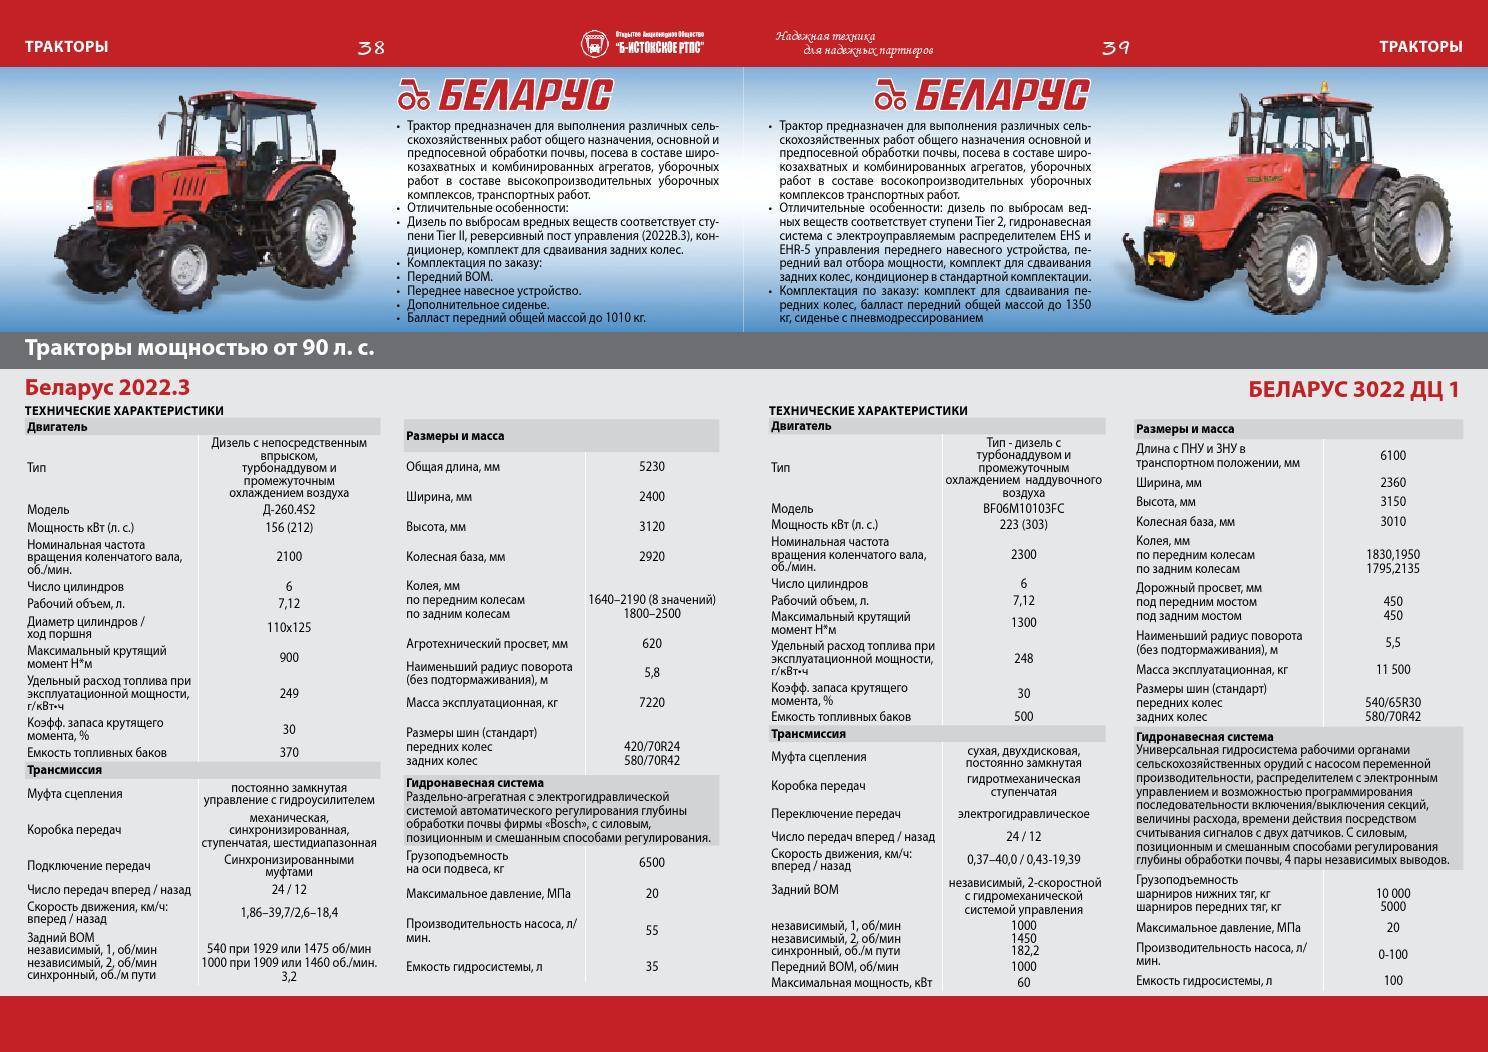 Трактор мтз 892 – устройство и технические характеристики